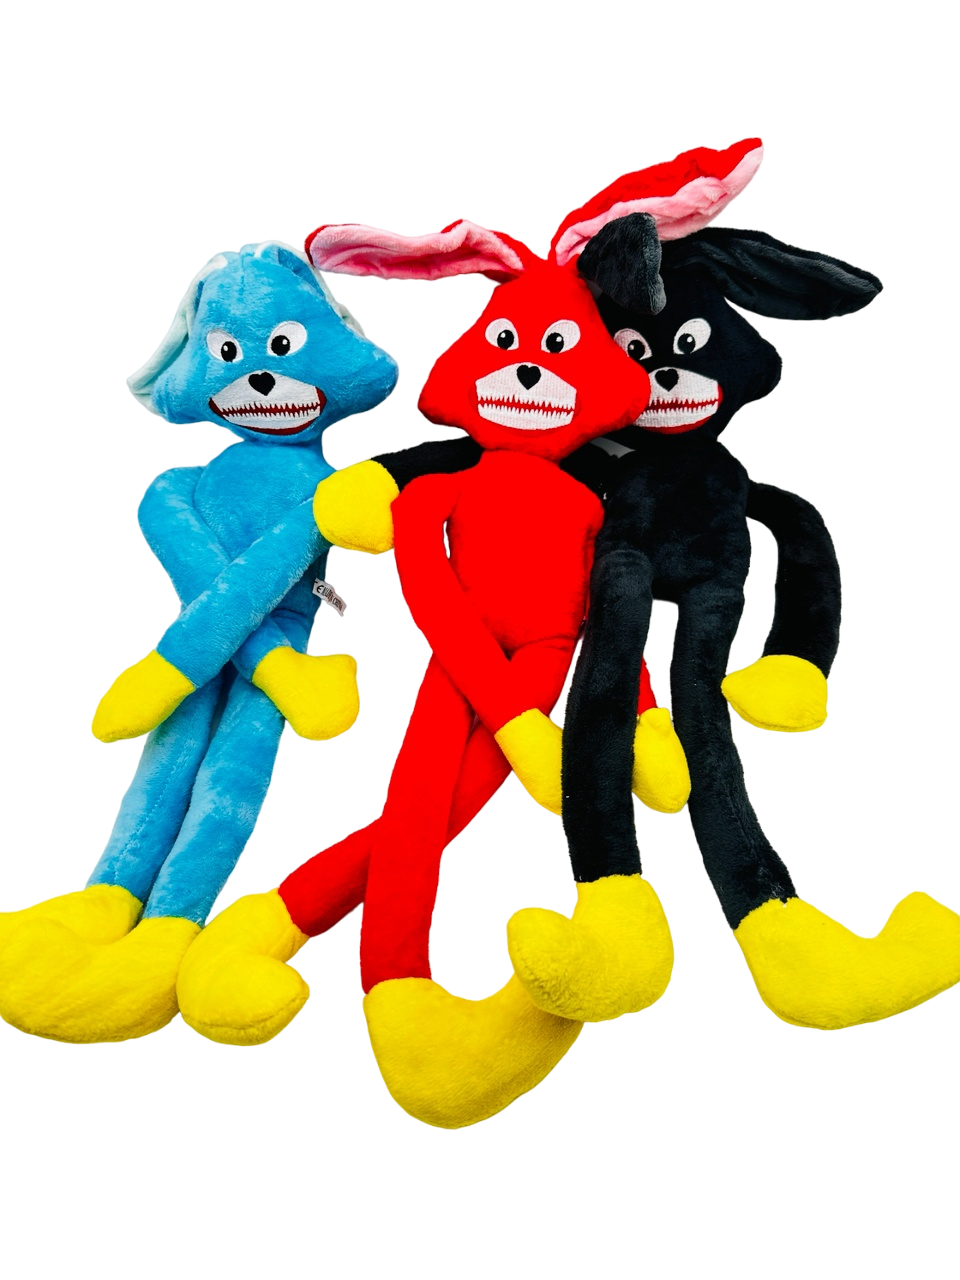 Мягкие игрушки 3 Веселых Зайца голубой, красный, черный три веселых зайца